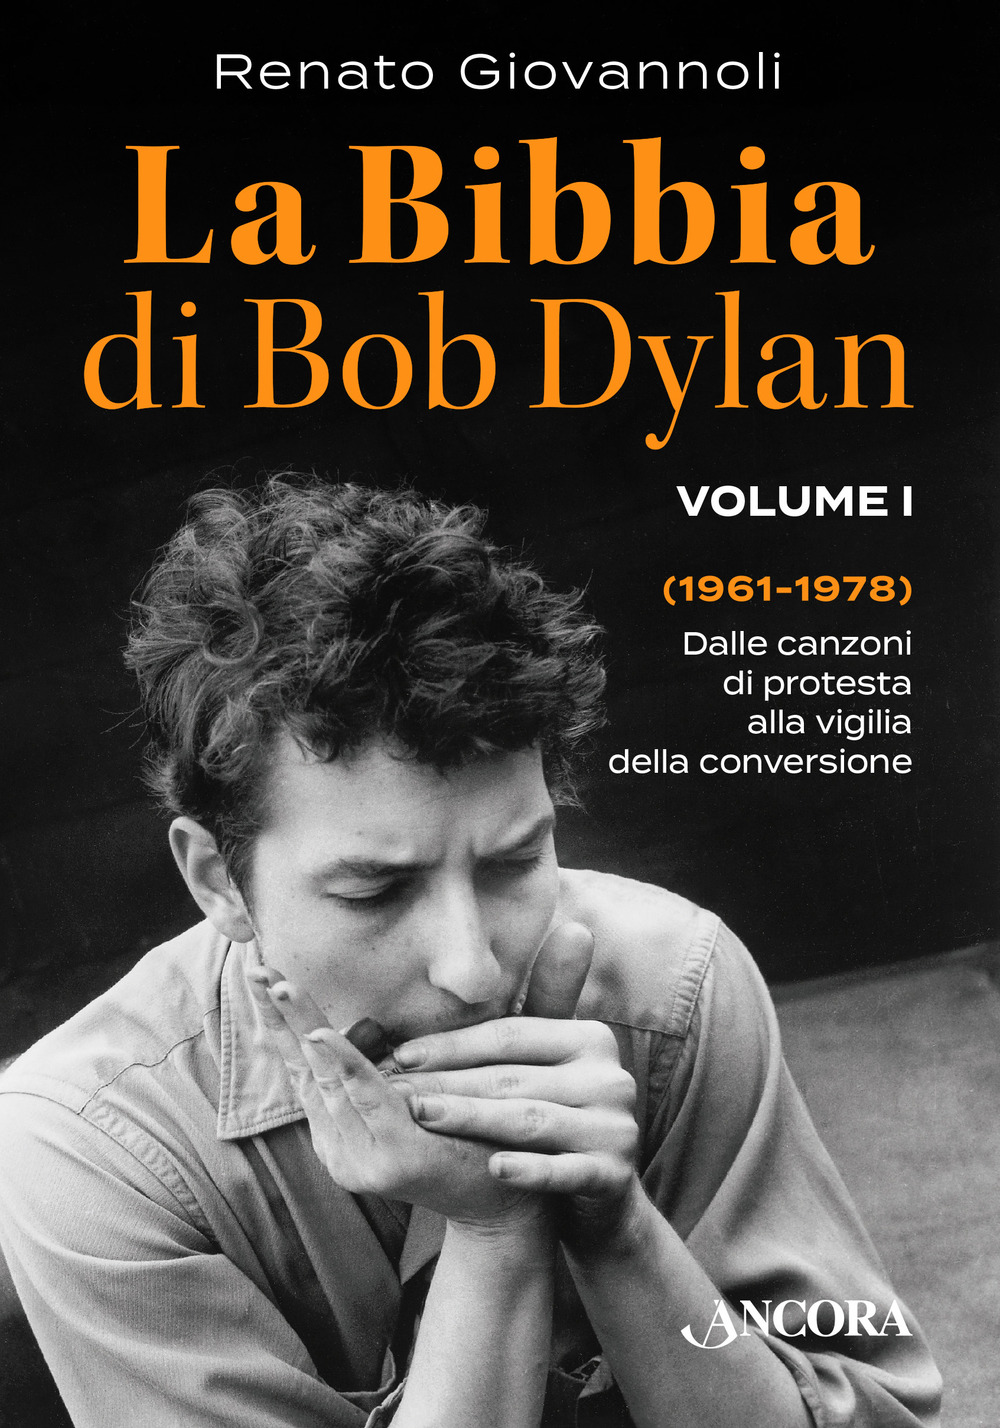 Libri Renato Giovannoli - La Bibbia Di Bob Dylan Vol 01 NUOVO SIGILLATO, EDIZIONE DEL 27/04/2017 SUBITO DISPONIBILE